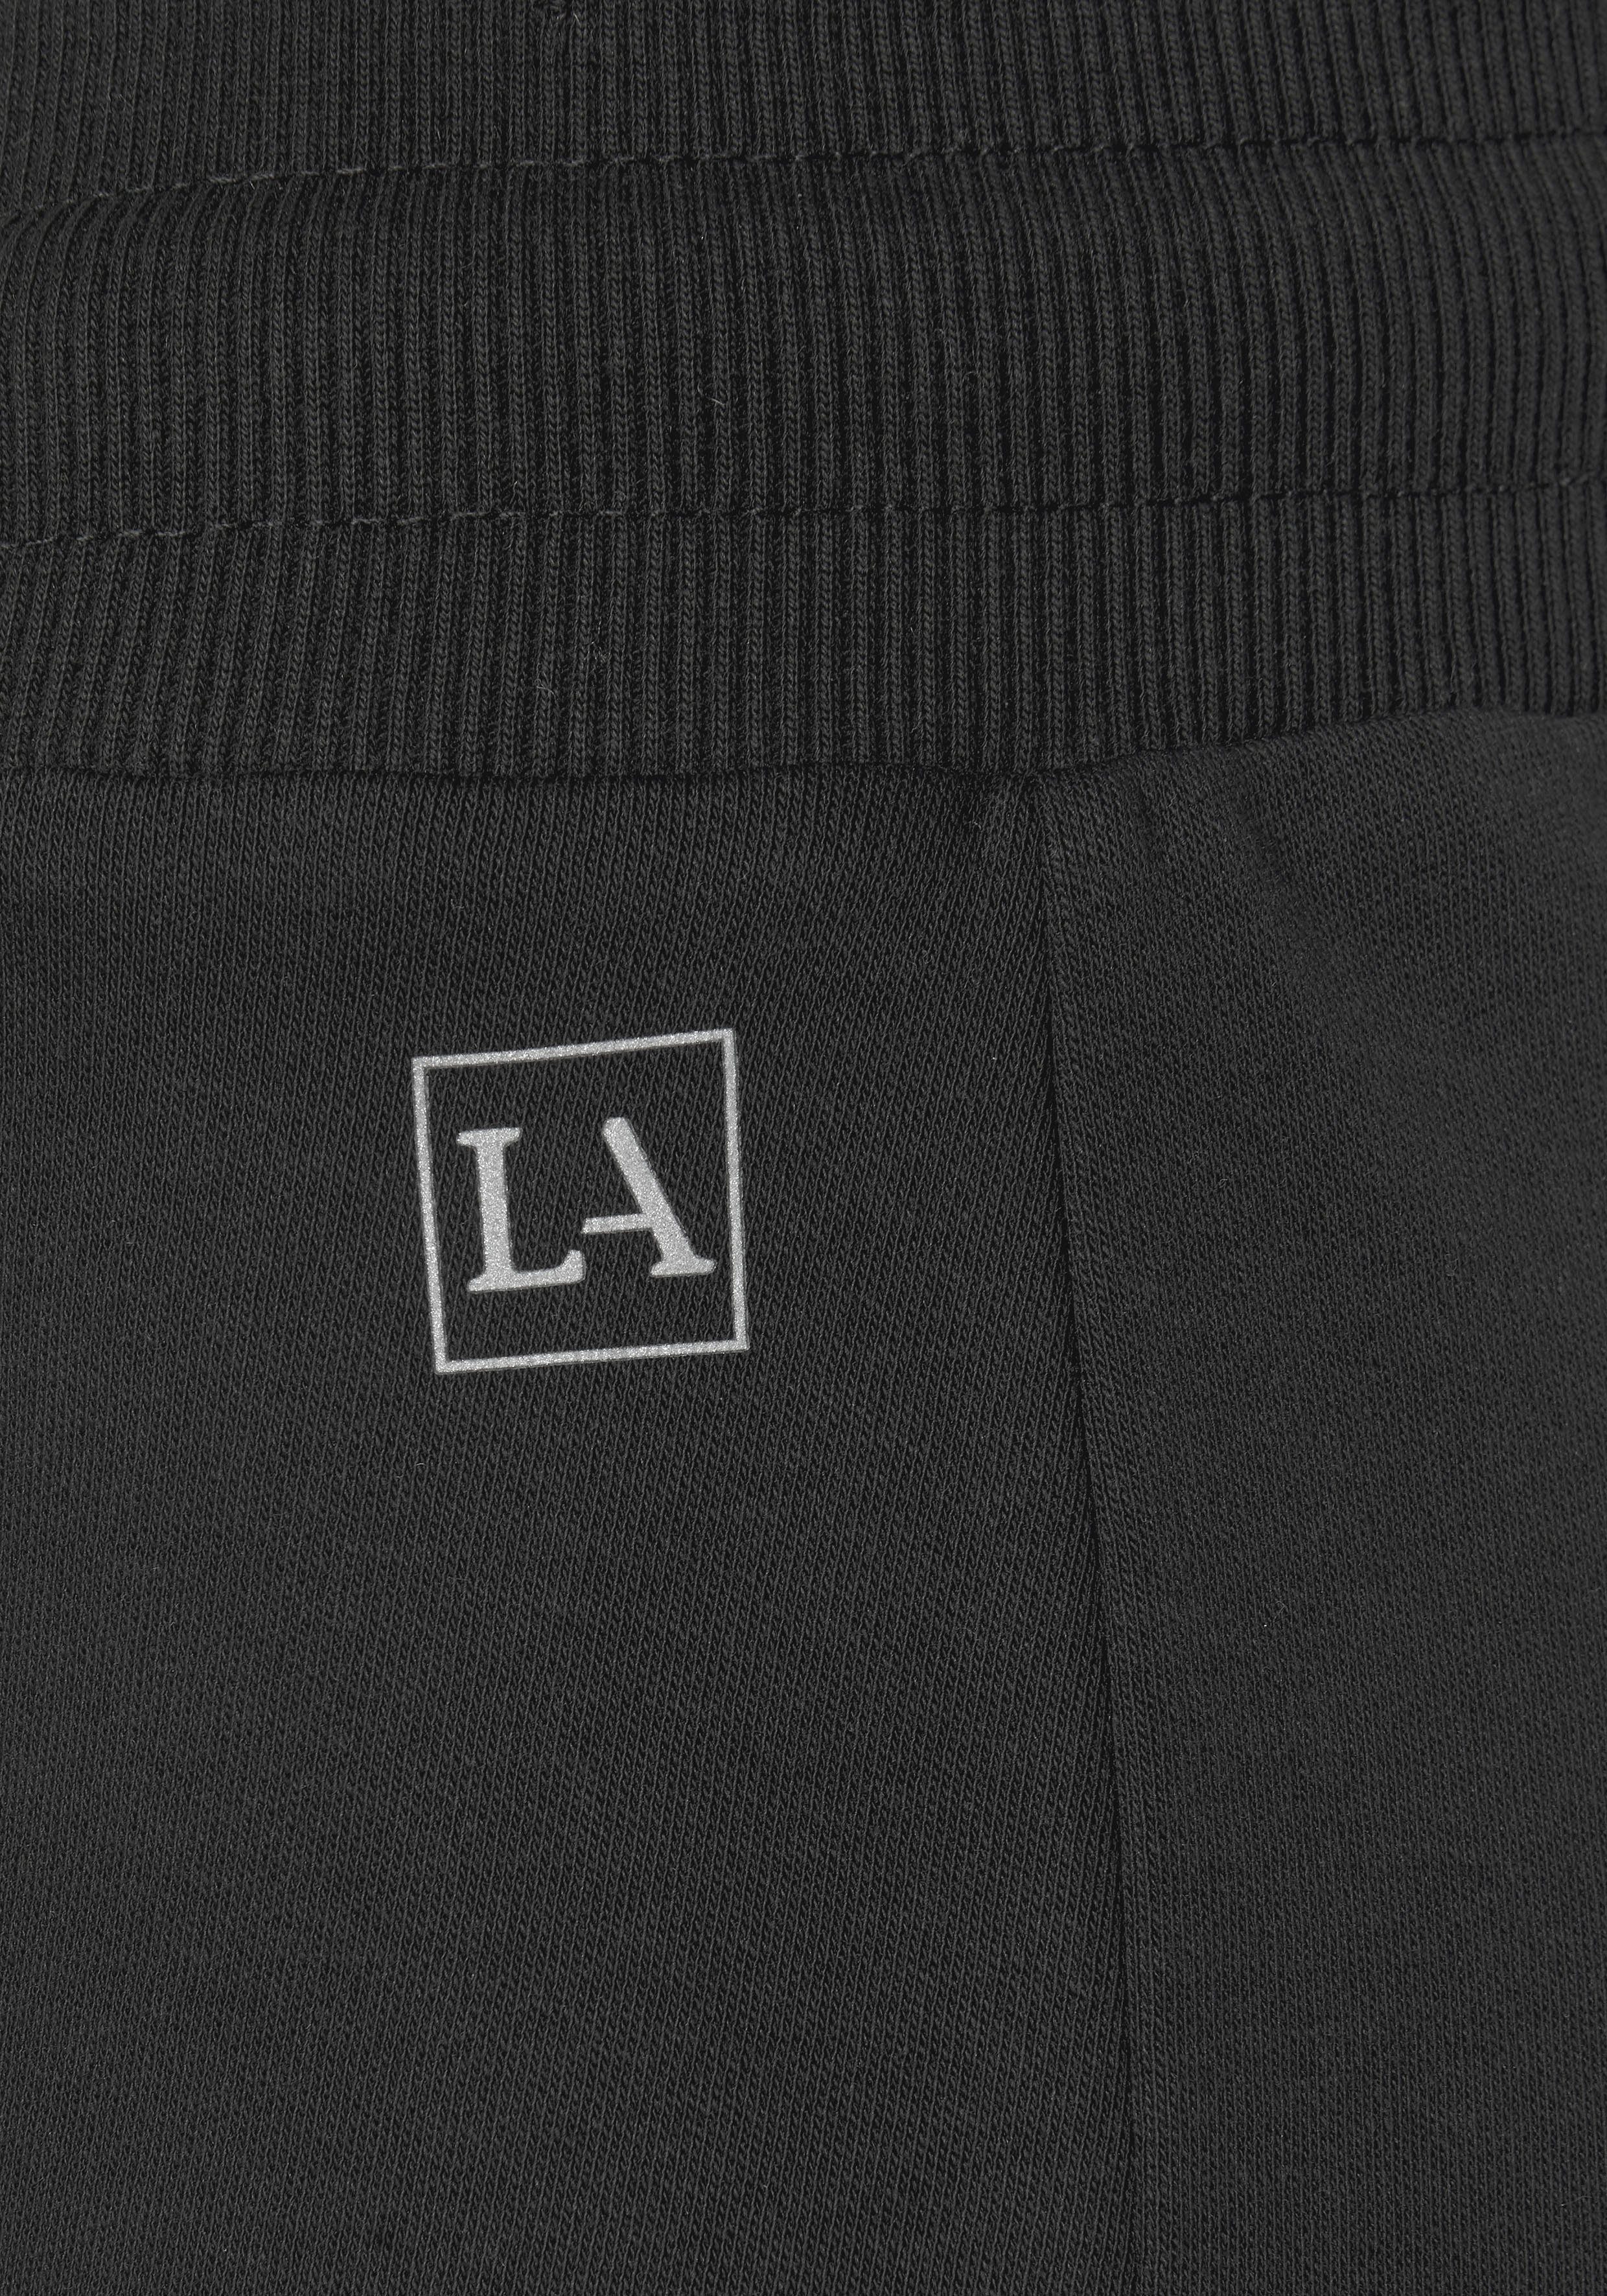 LASCANA ACTIVE Shorts mit kleinen schwarz Seitenschlitzen